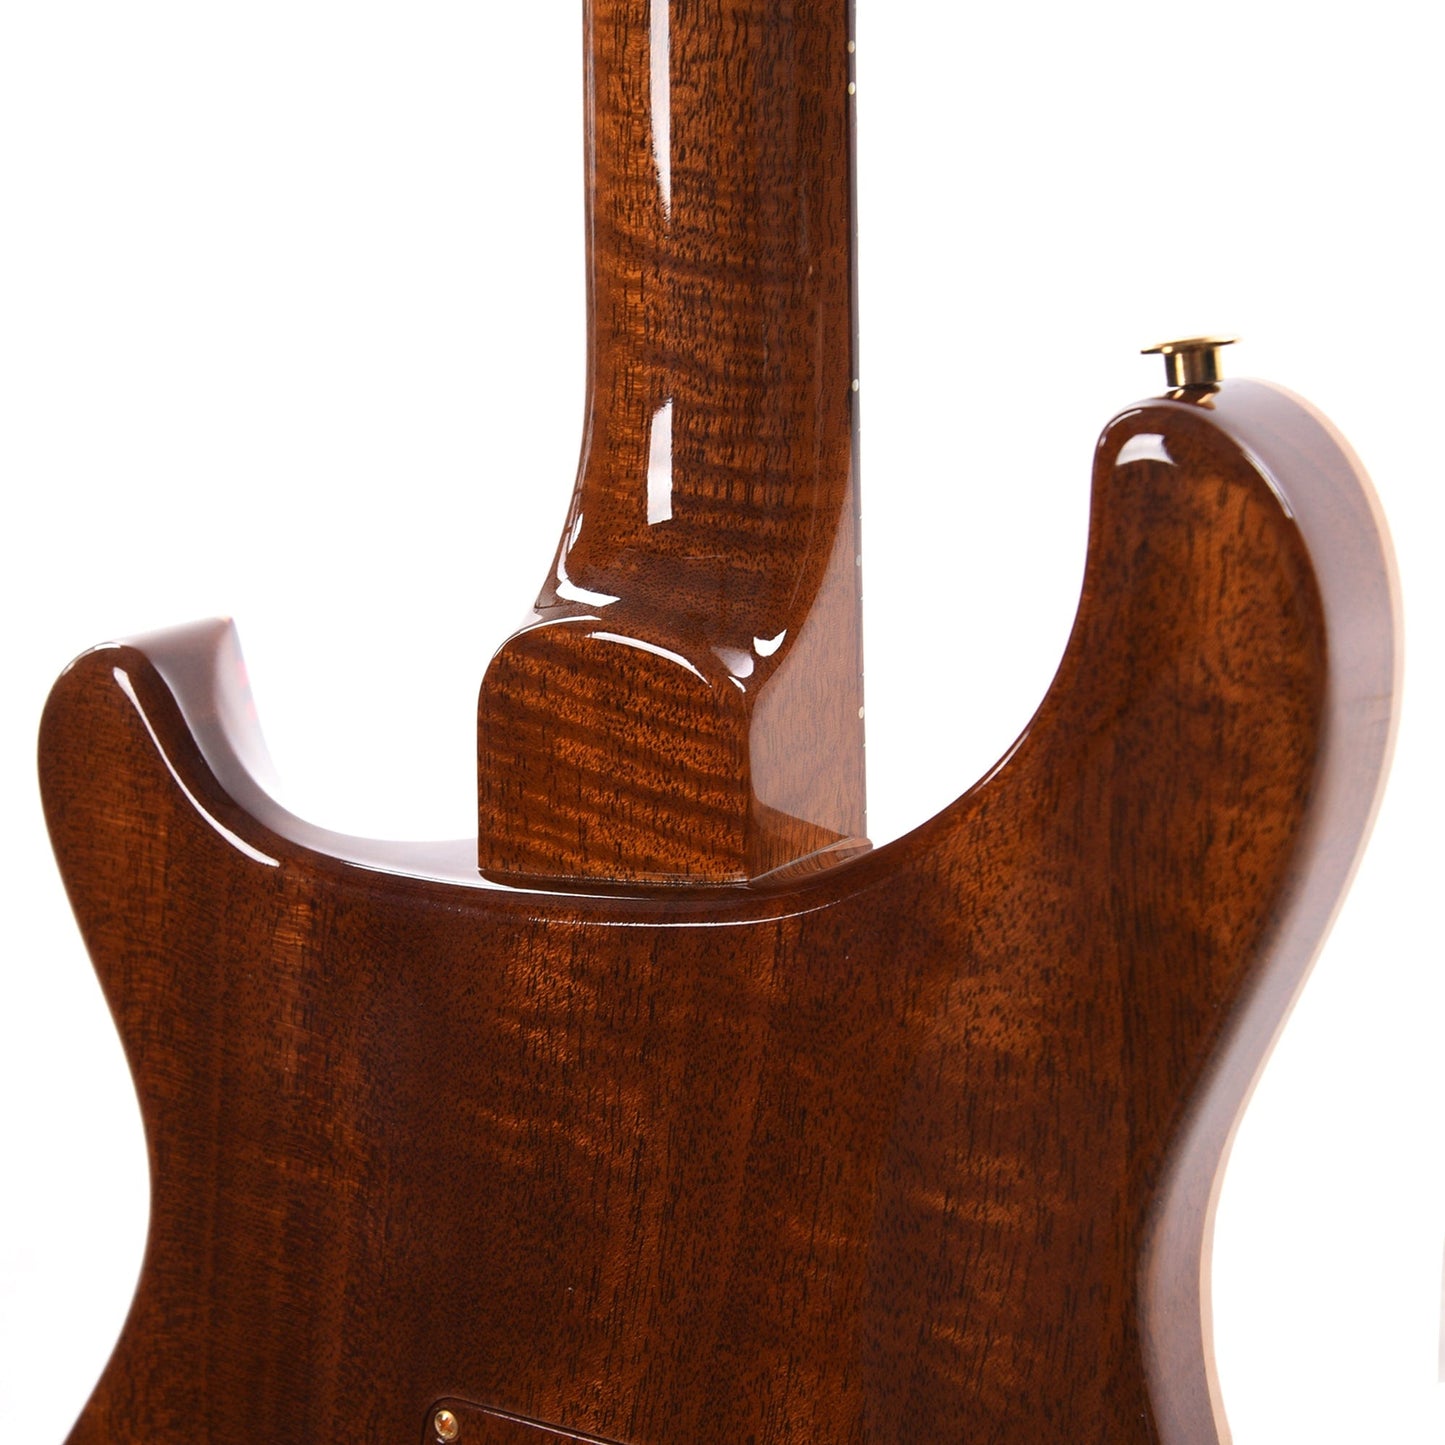 PRS Private Stock #10448 DGT Dragon's Breath Curly Maple w/Figured Mahogany Neck & Cocobolo Fingerboard Electric Guitars / Solid Body